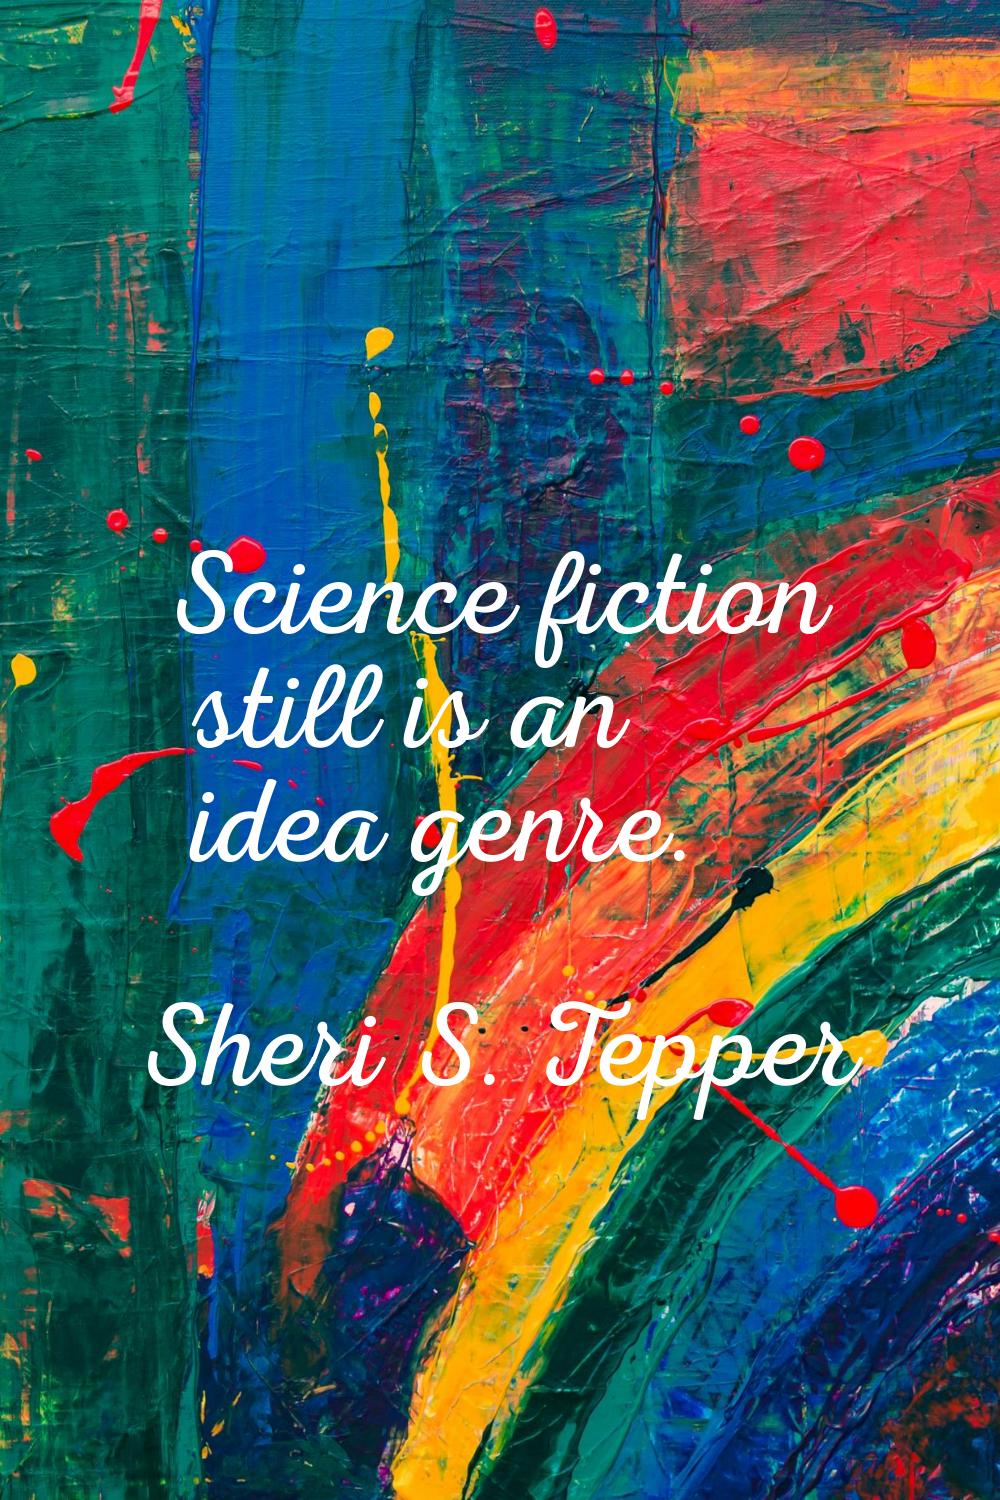 Science fiction still is an idea genre.